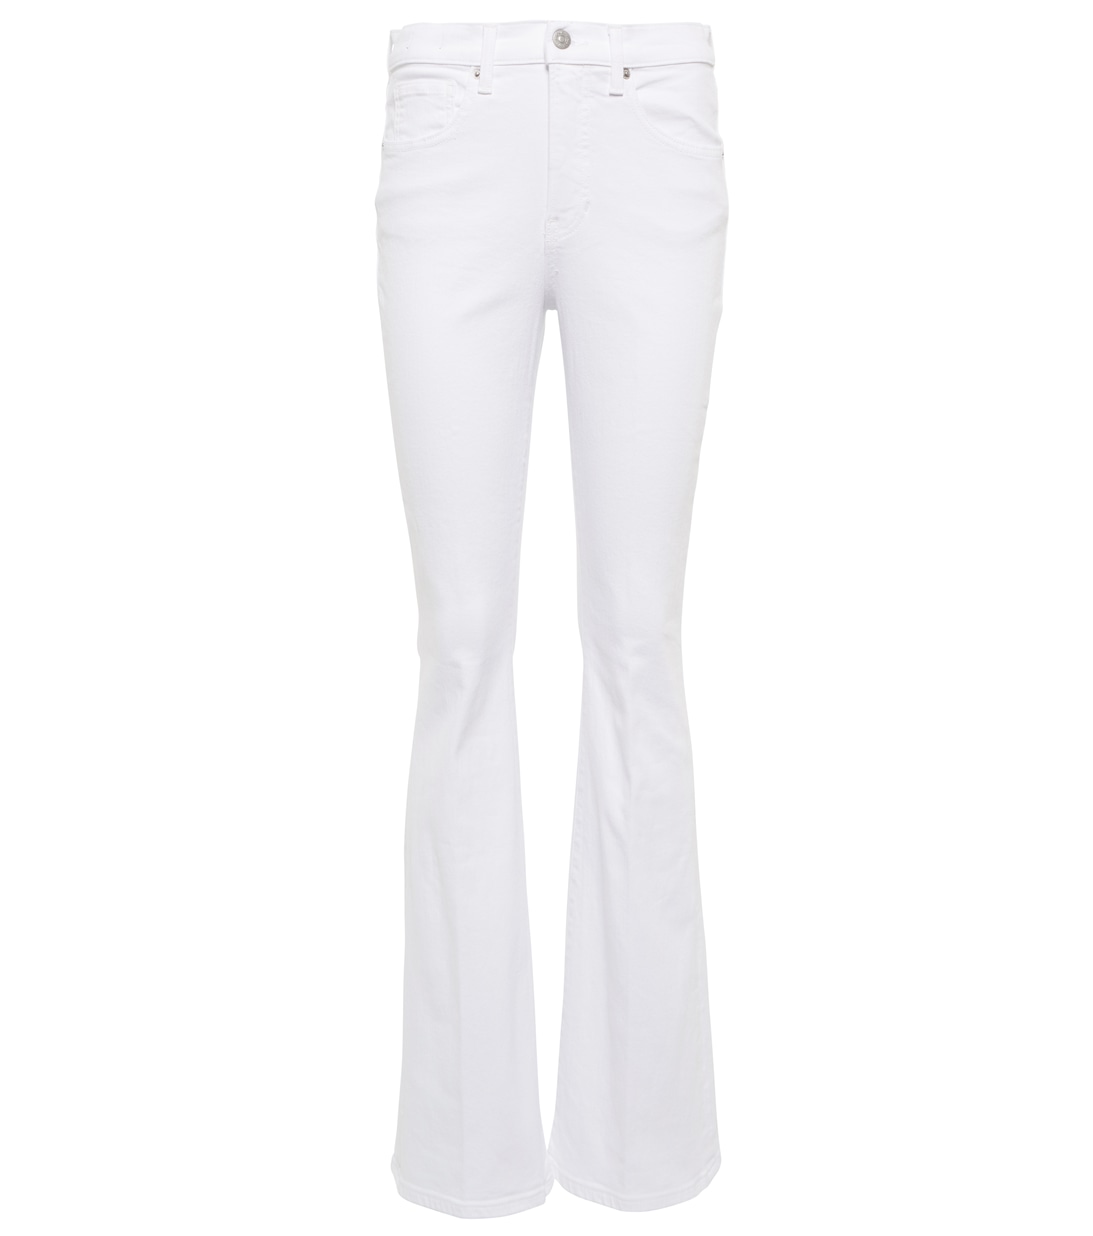 Расклешенные джинсы Beverly с высокой посадкой VERONICA BEARD, белый расклешенные джинсы carly со средней посадкой veronica beard цвет sierra blue